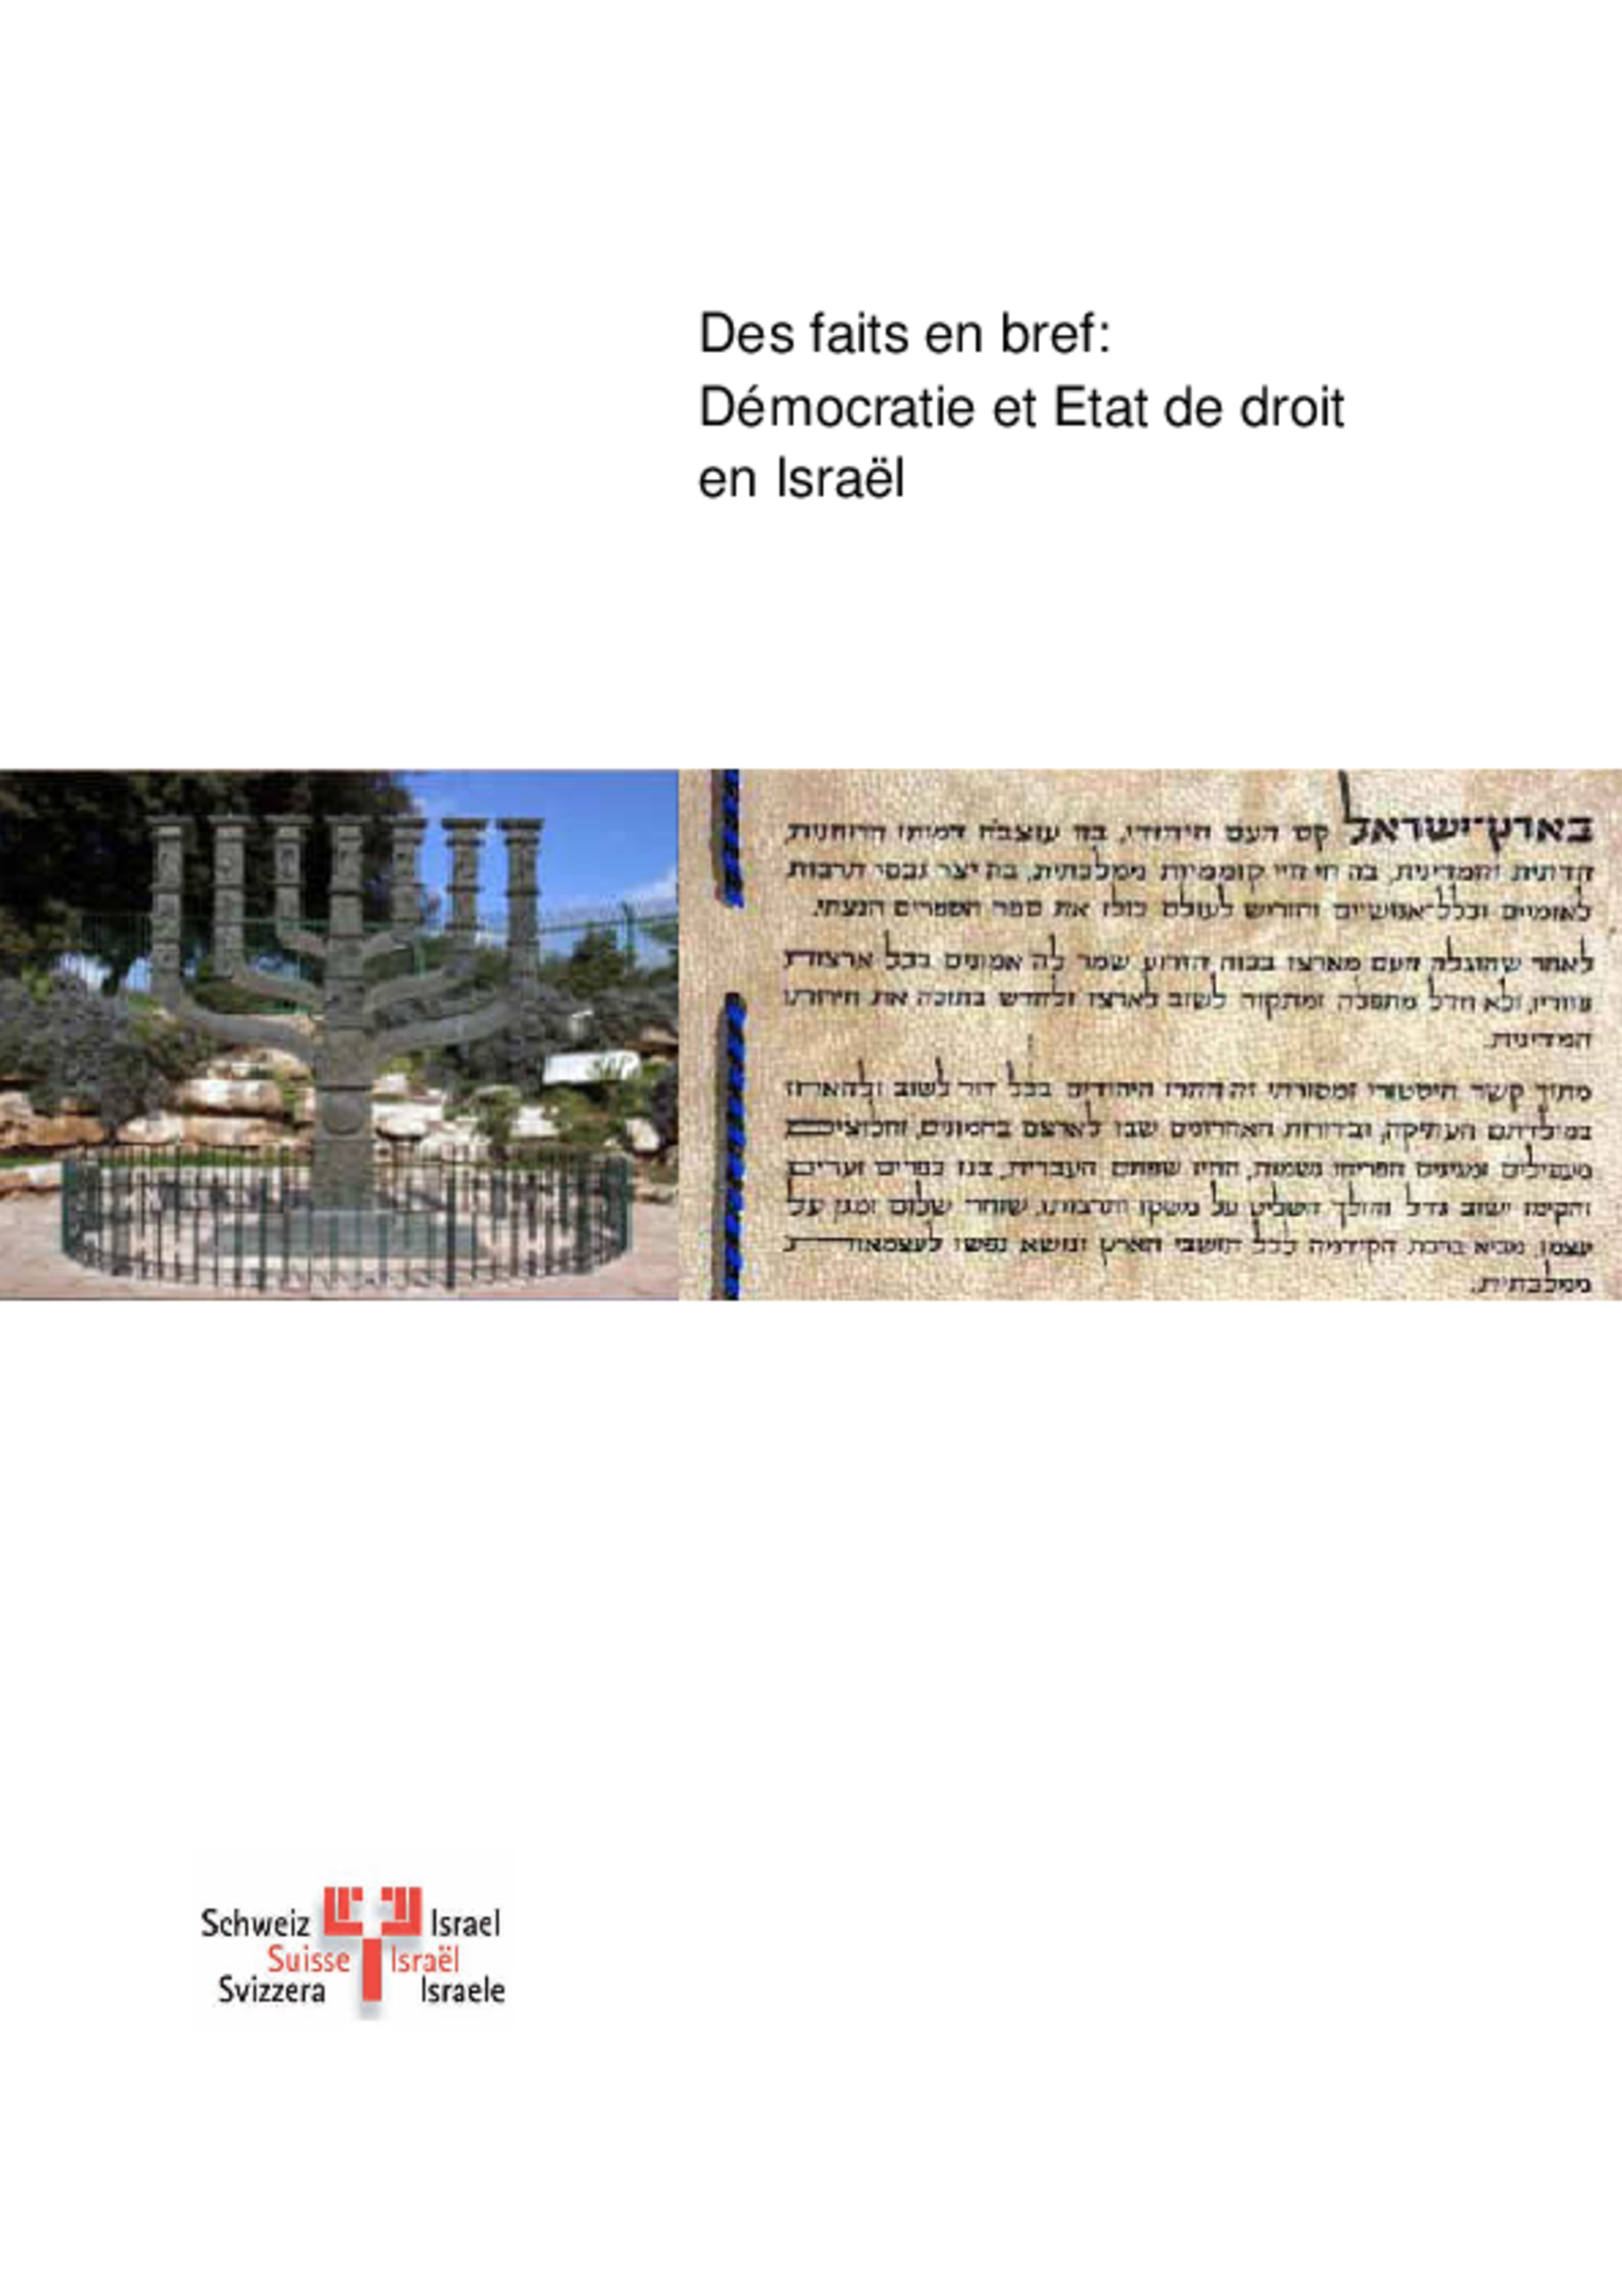 Les faits en bref: Démocratie et Etat de droit en Israël (2011)